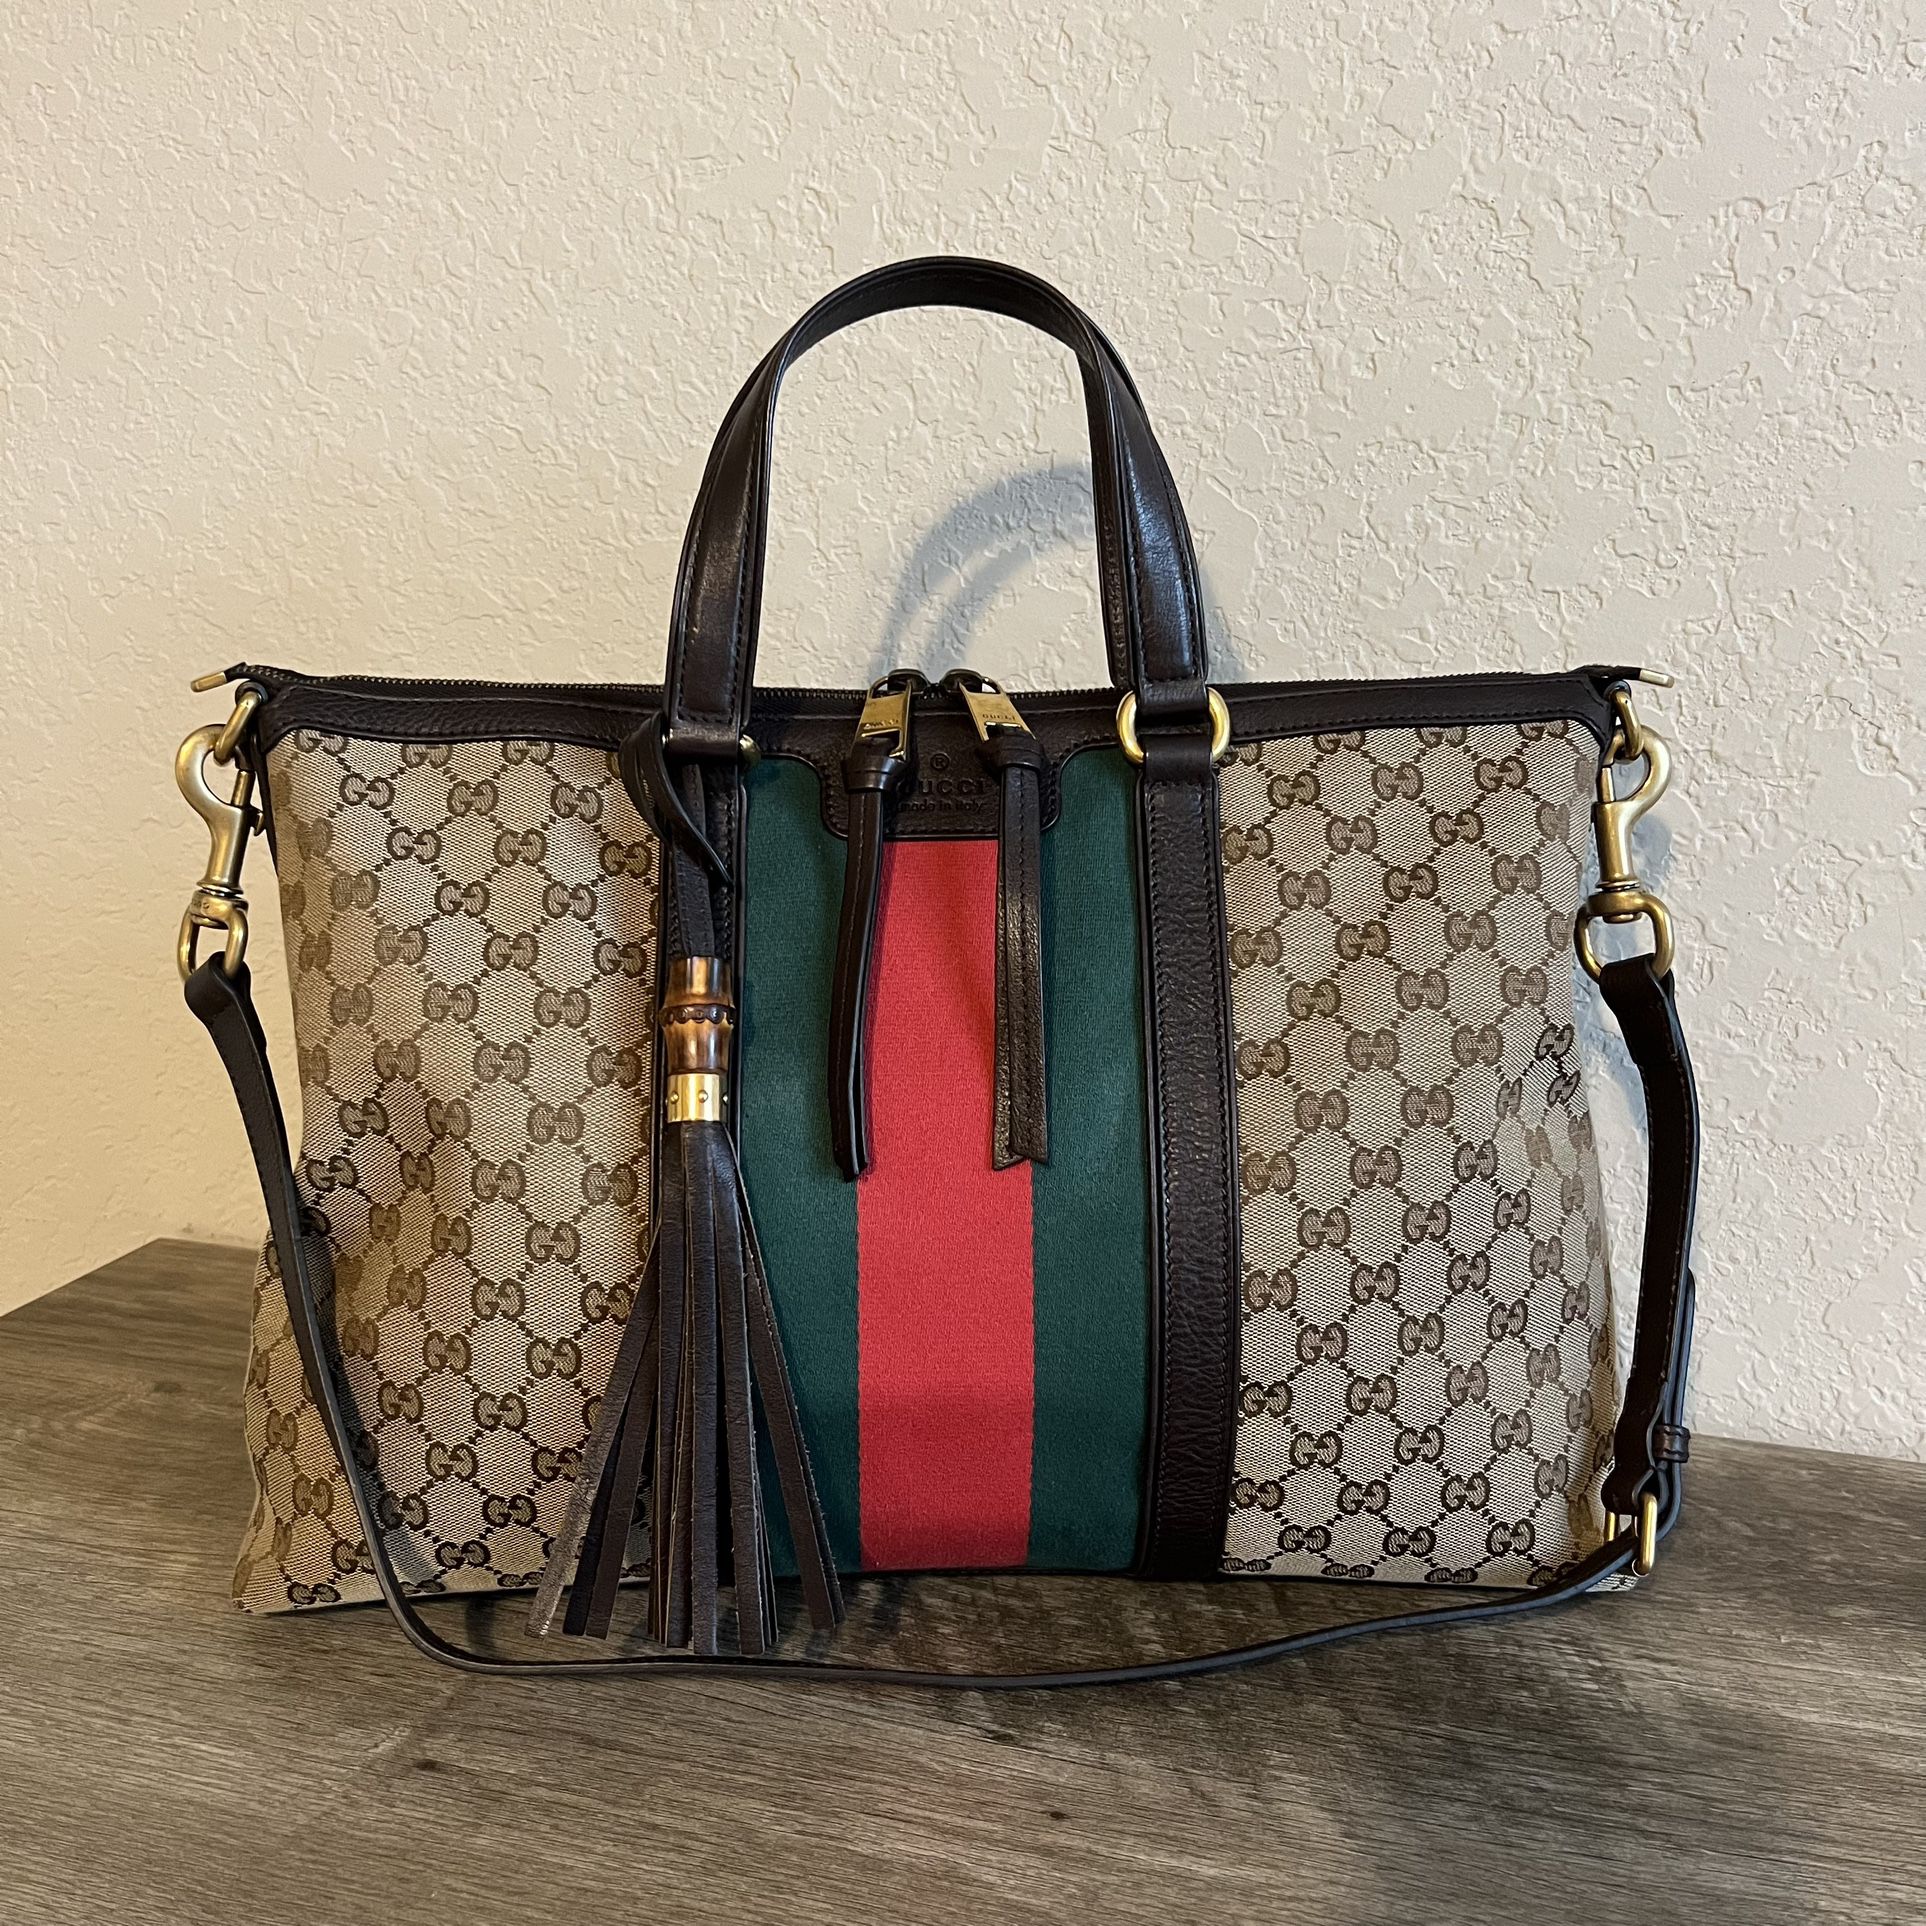 Gucci Rania Original GG Canvas Tote Bag for Sale in San Antonio, TX ...